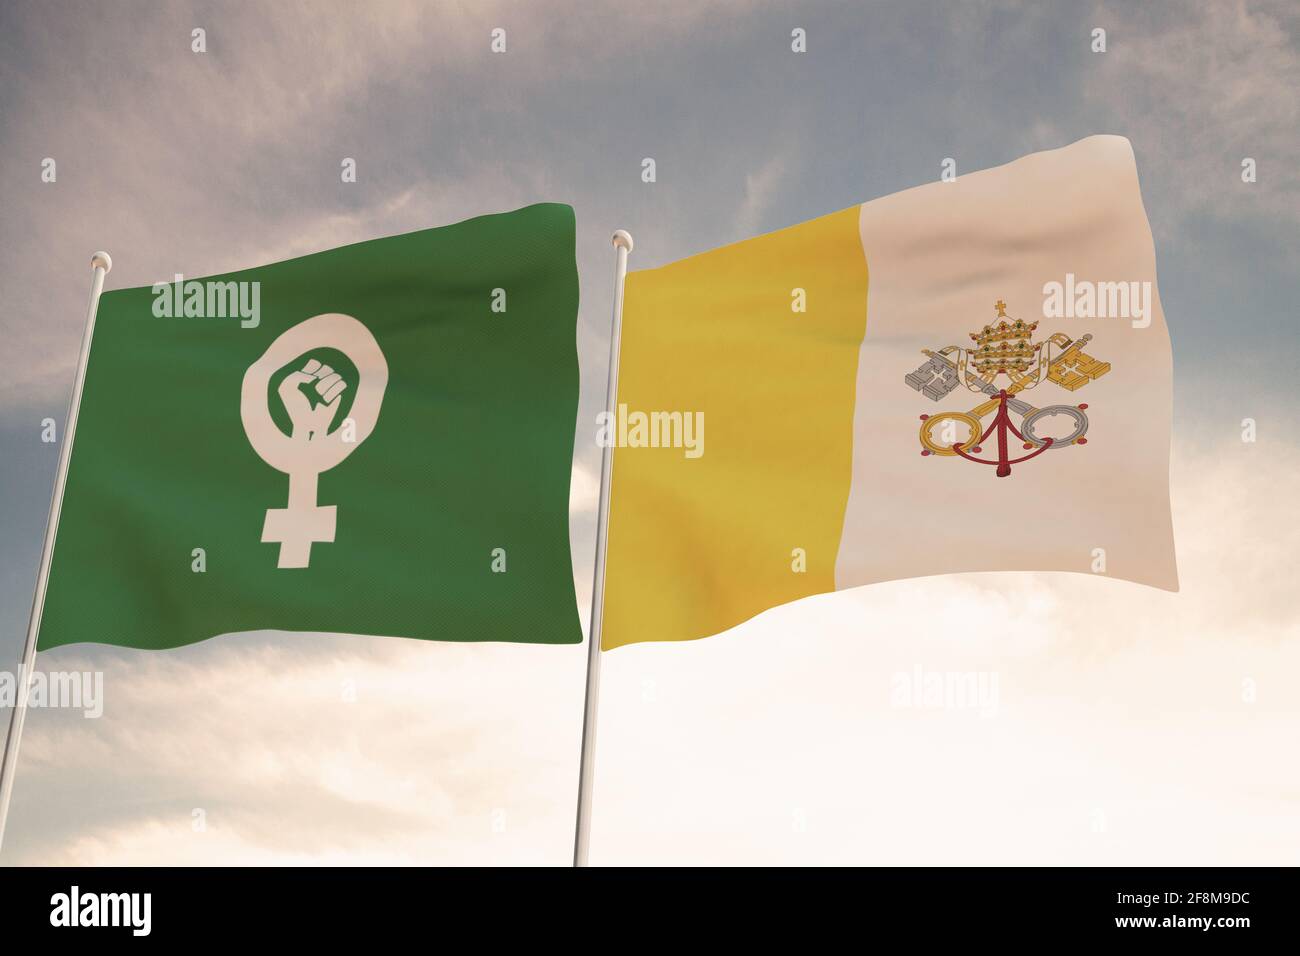 Flaggen von Feministinnen, die sich für Abtreibung eingesetzt haben, und des vatikans winken hinter dem wolkenlosen Himmel. Stockfoto